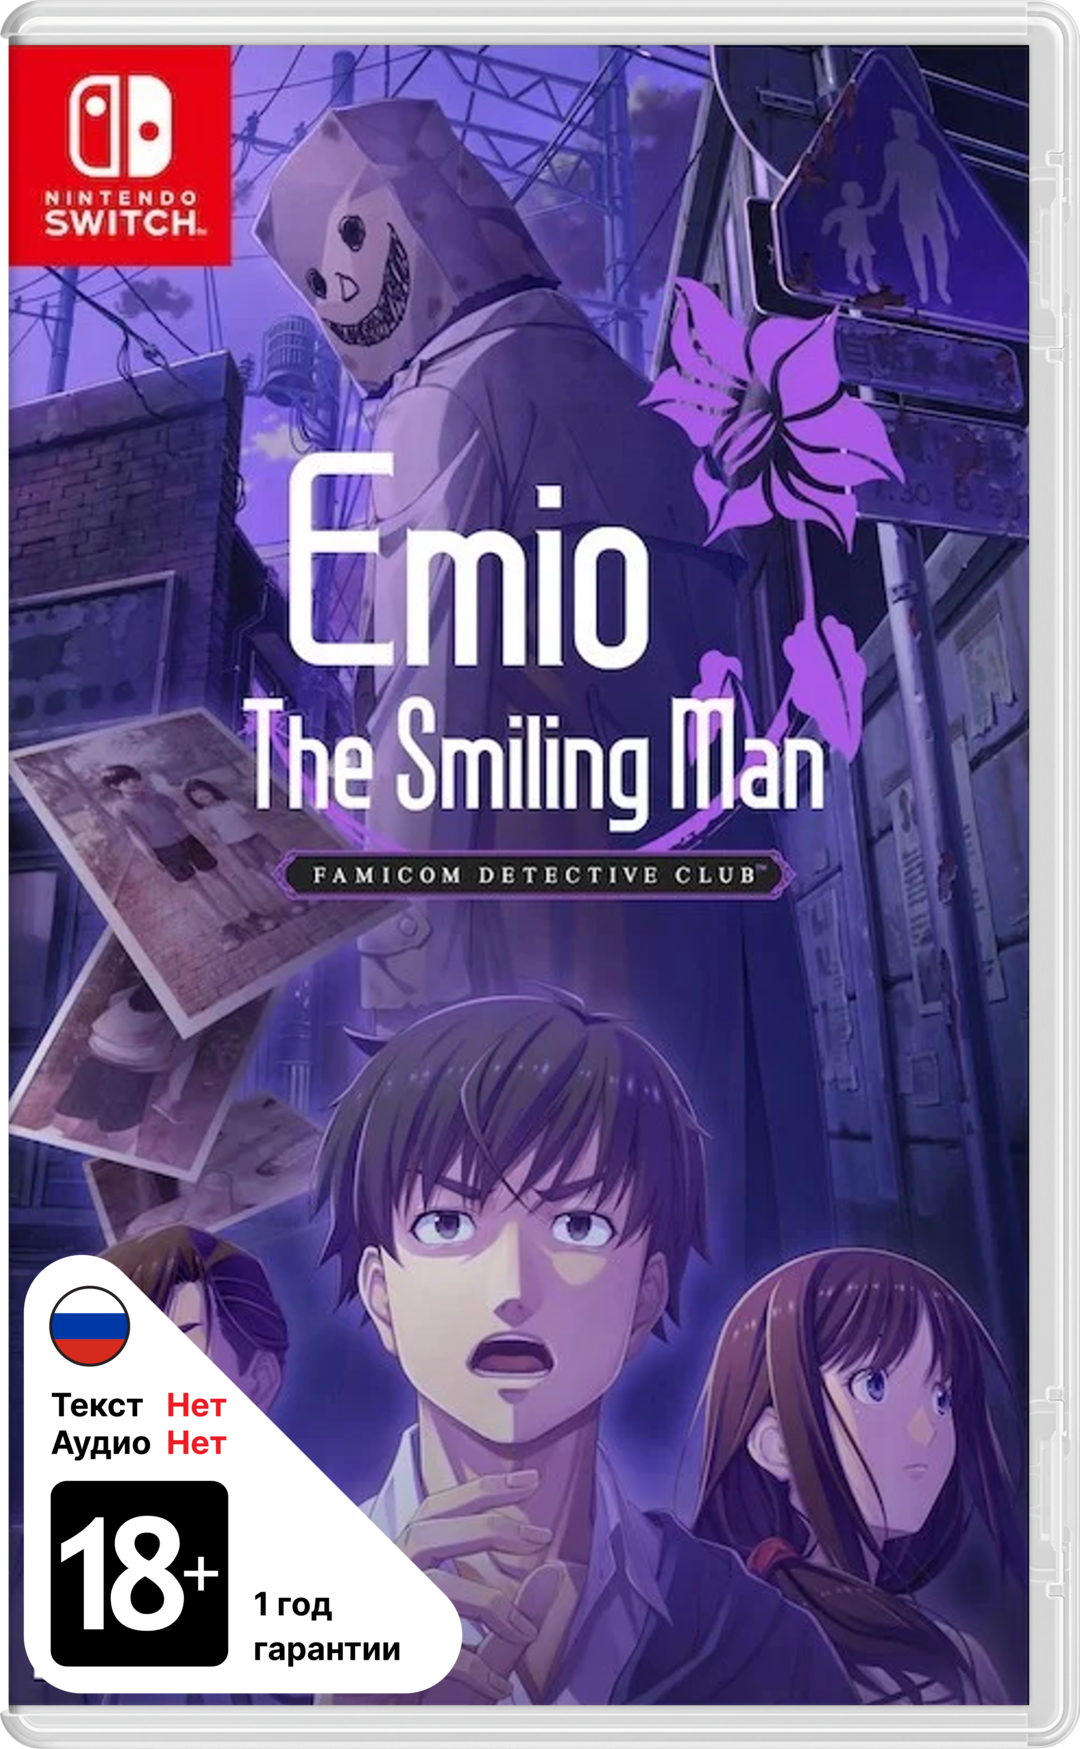 Emio The Smiling Man Famicom Detective Club